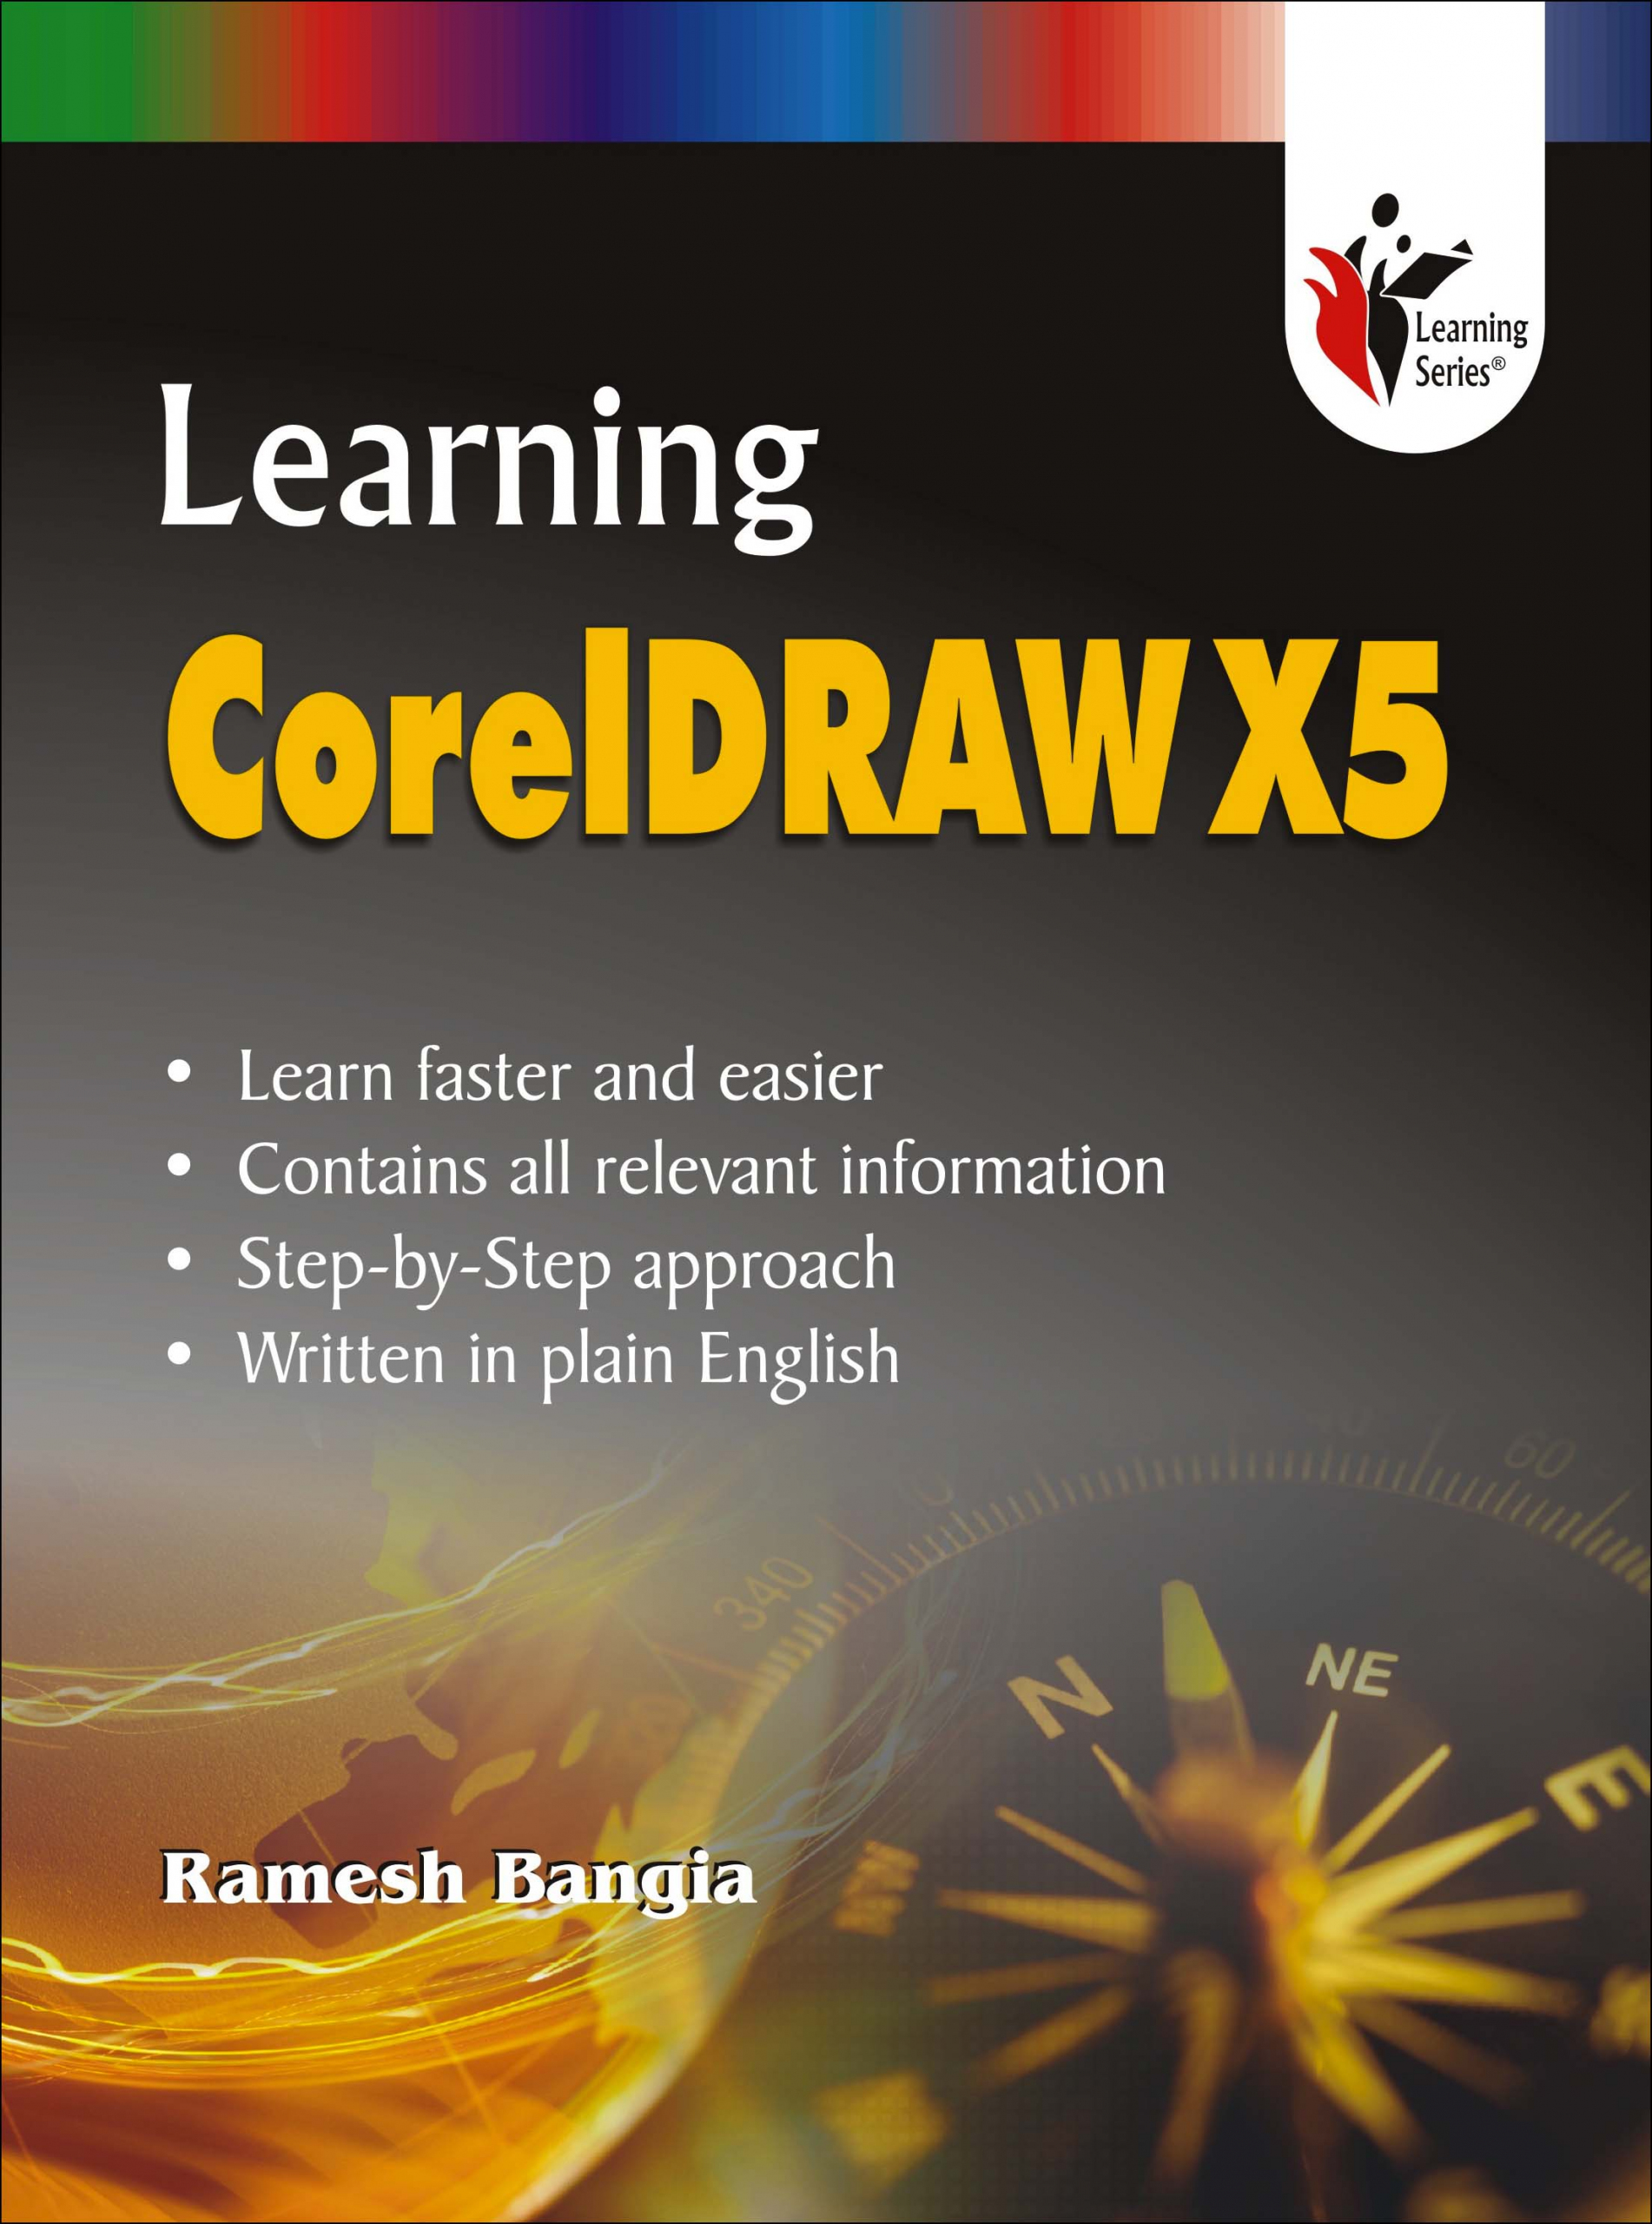 Learning CorelDraw X5